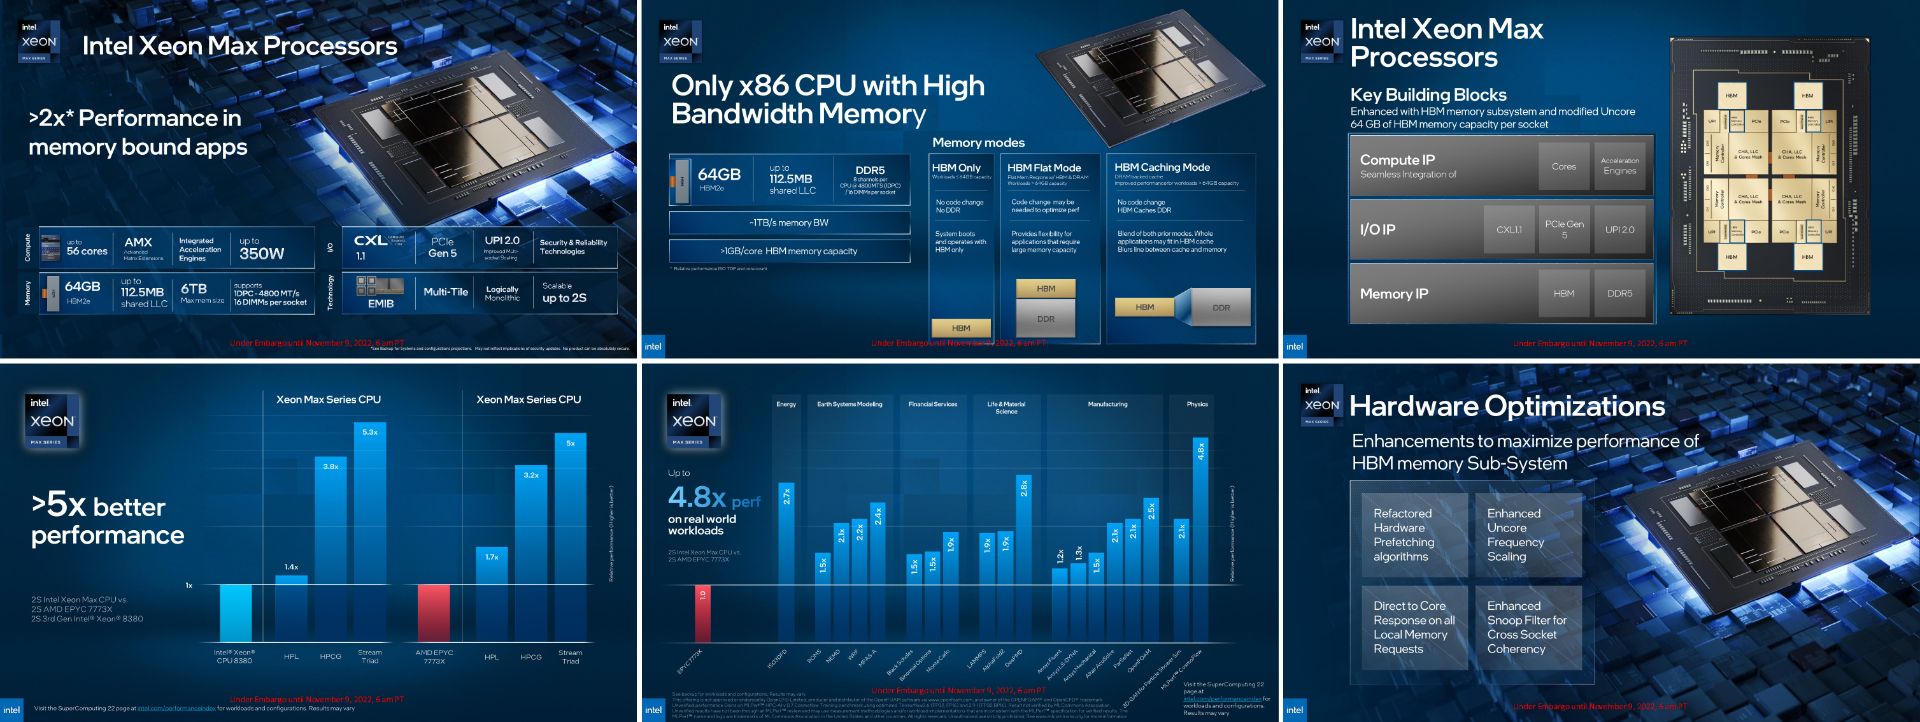 مشخصات فنی پردازنده های Intel Xeon Mx